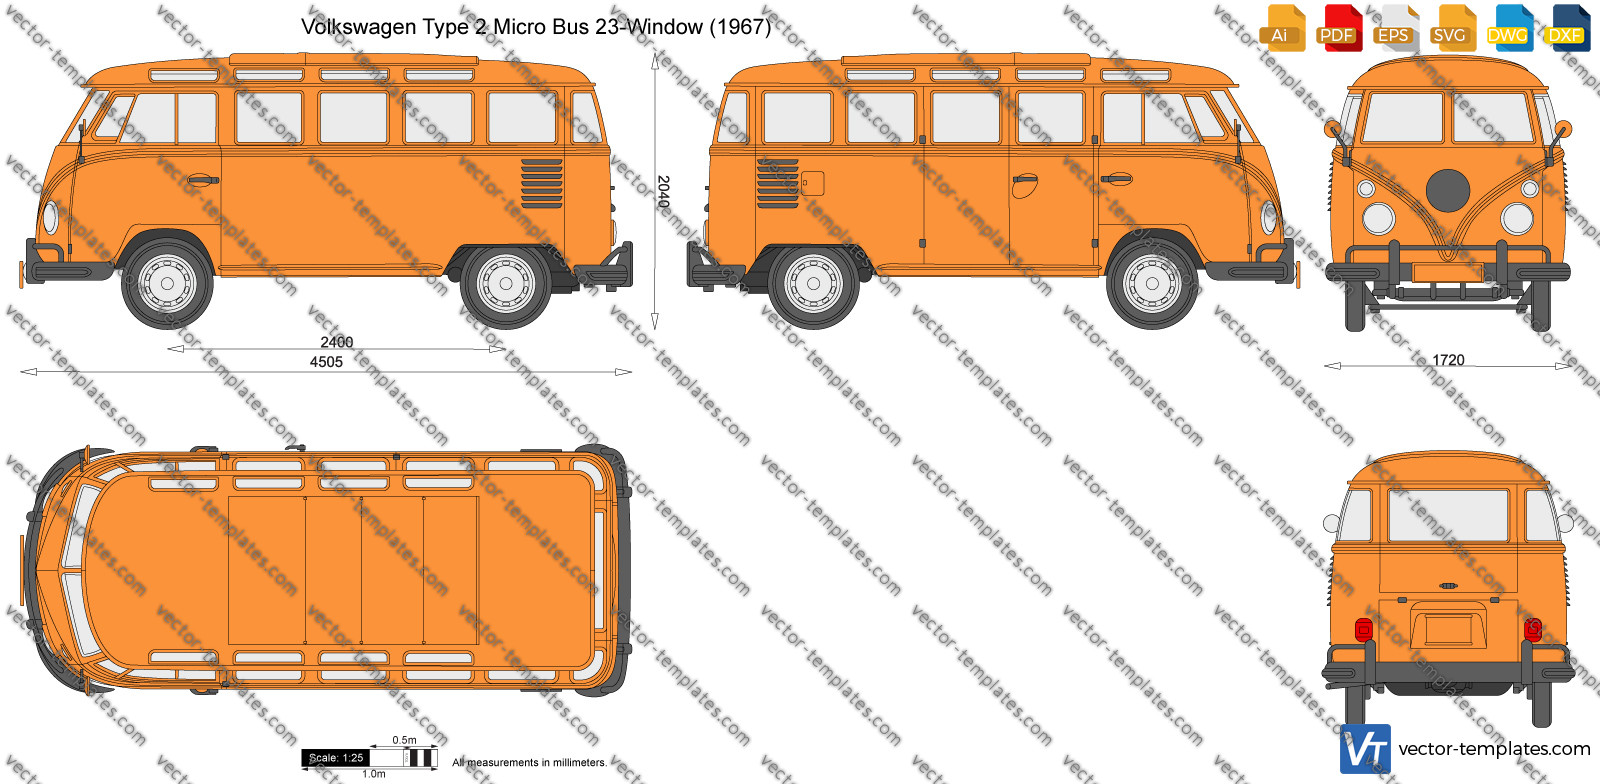 Volkswagen Type 2 Micro Bus 23-Window 1967